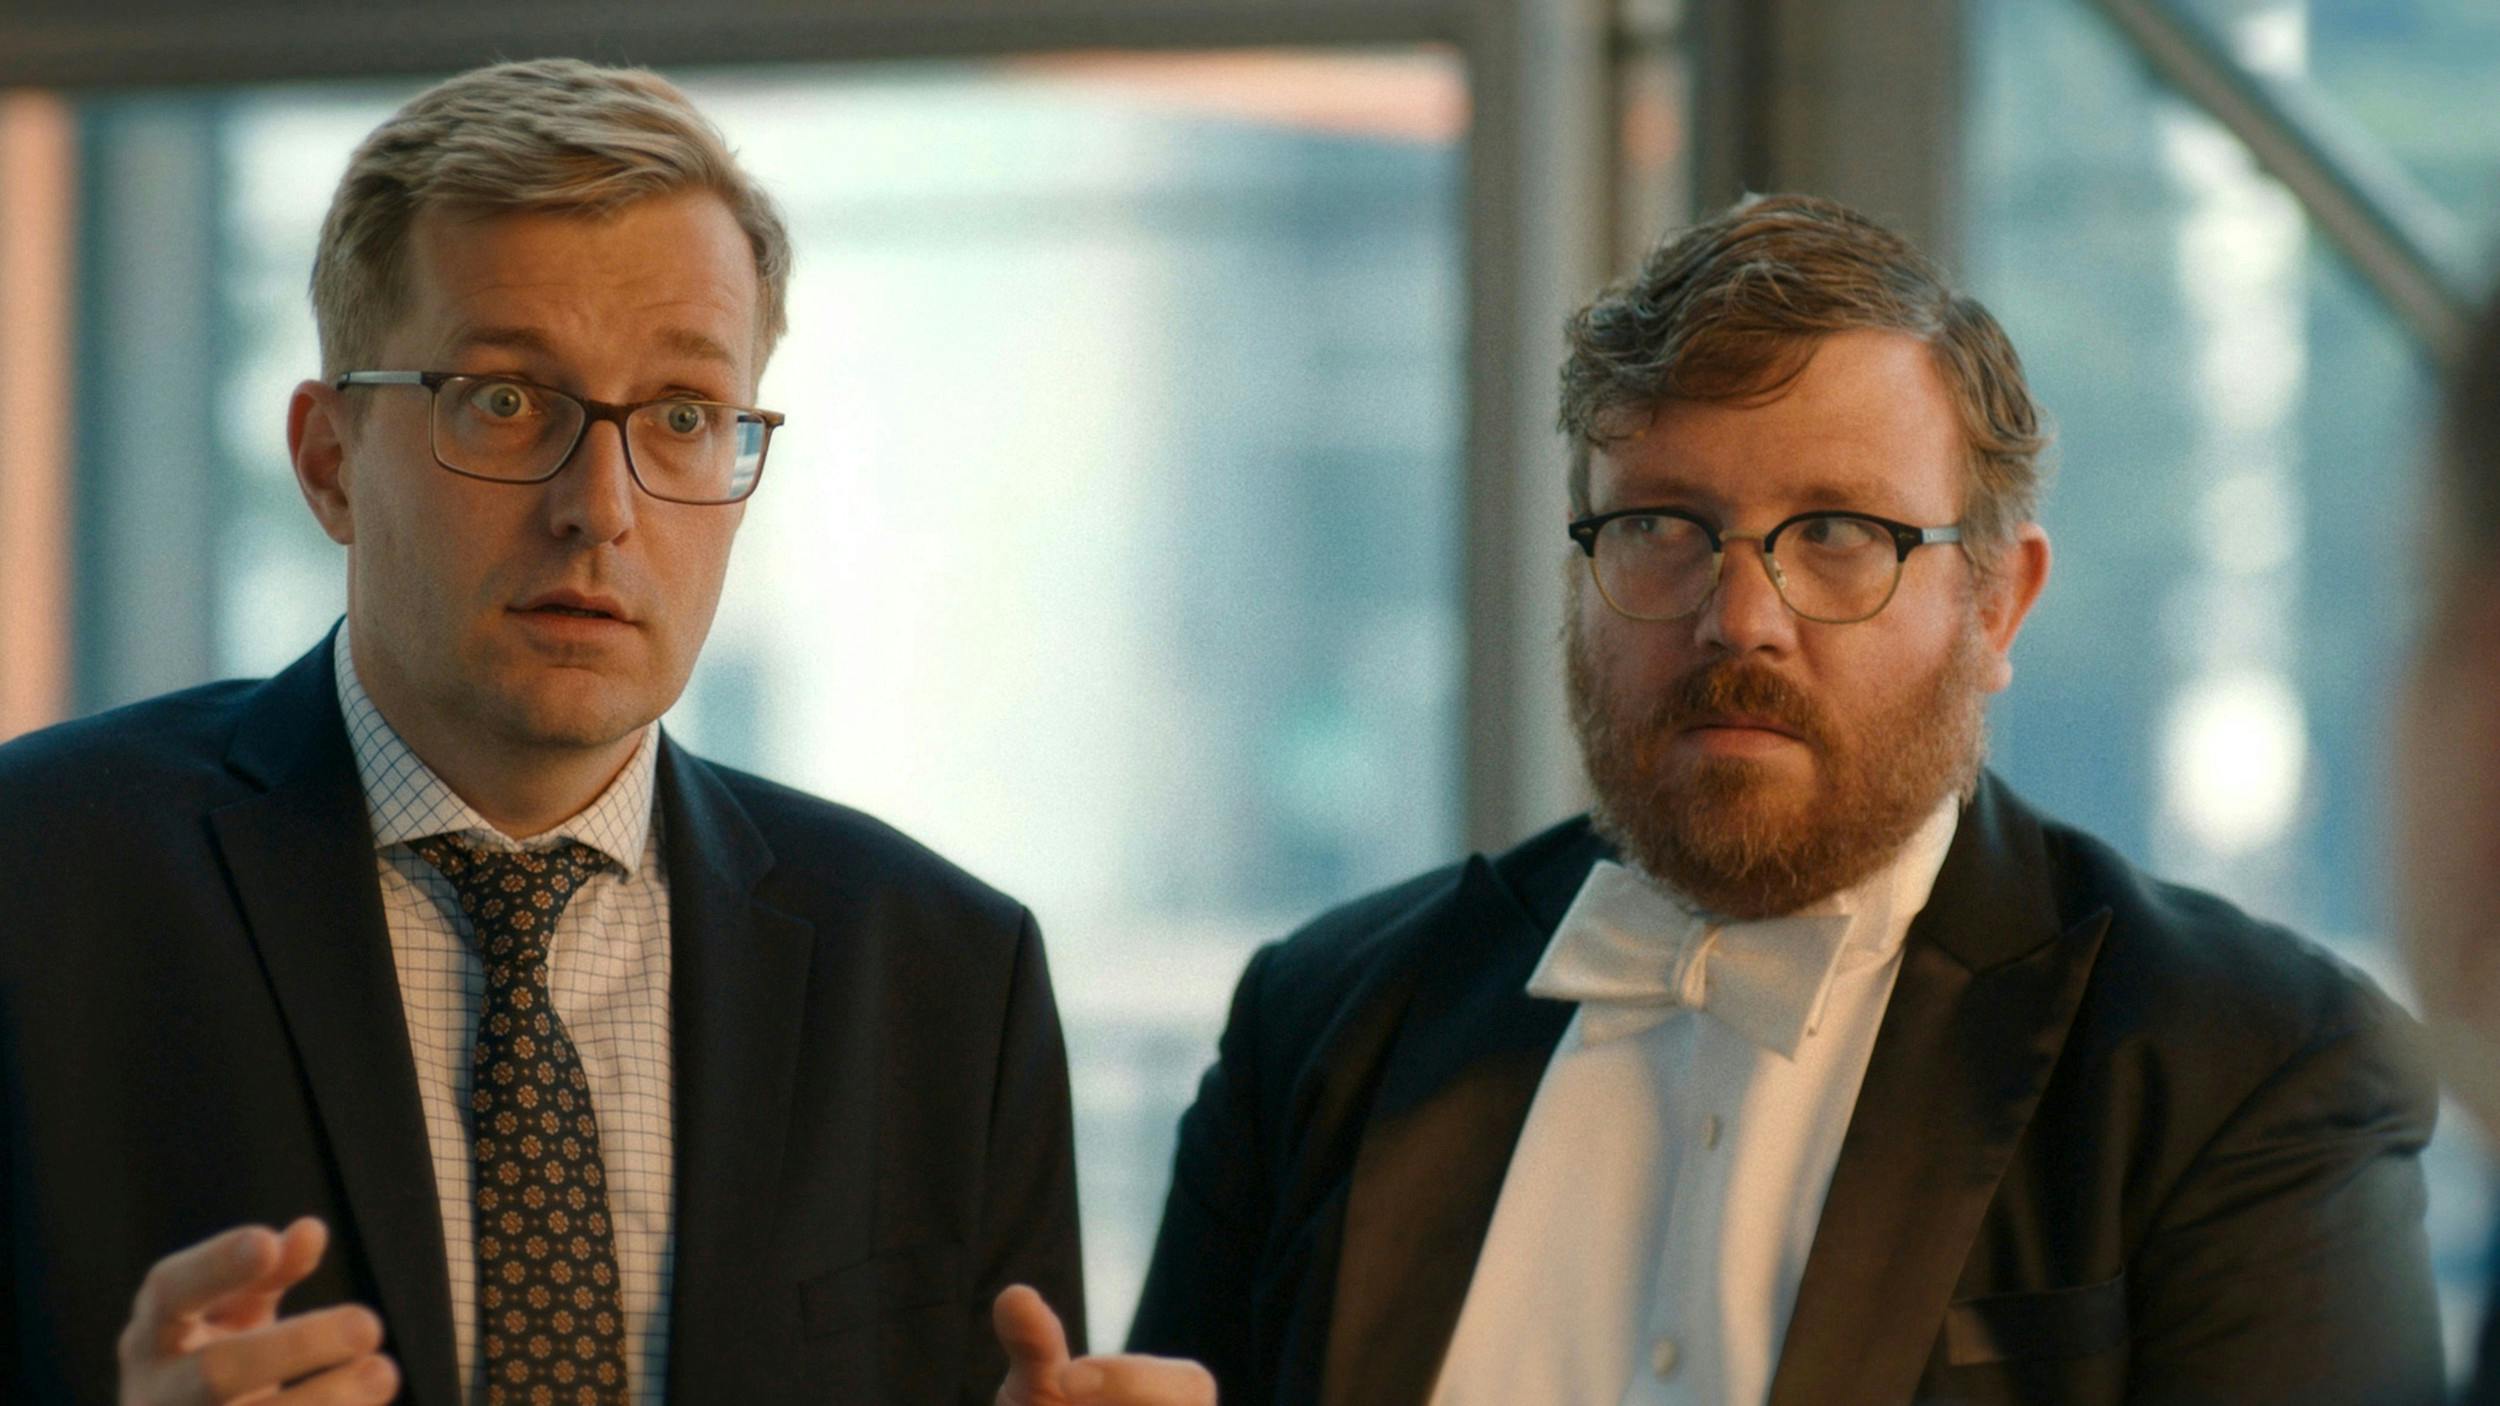 De to venner har de bærende roller i komediedramaserien ”Orkestret”, hvor Rasmus spiller lederen af det fiktive symfoniorkester Jeppe Nygren, mens Frederik spiller klarinettisten Bo Høxenhaven.